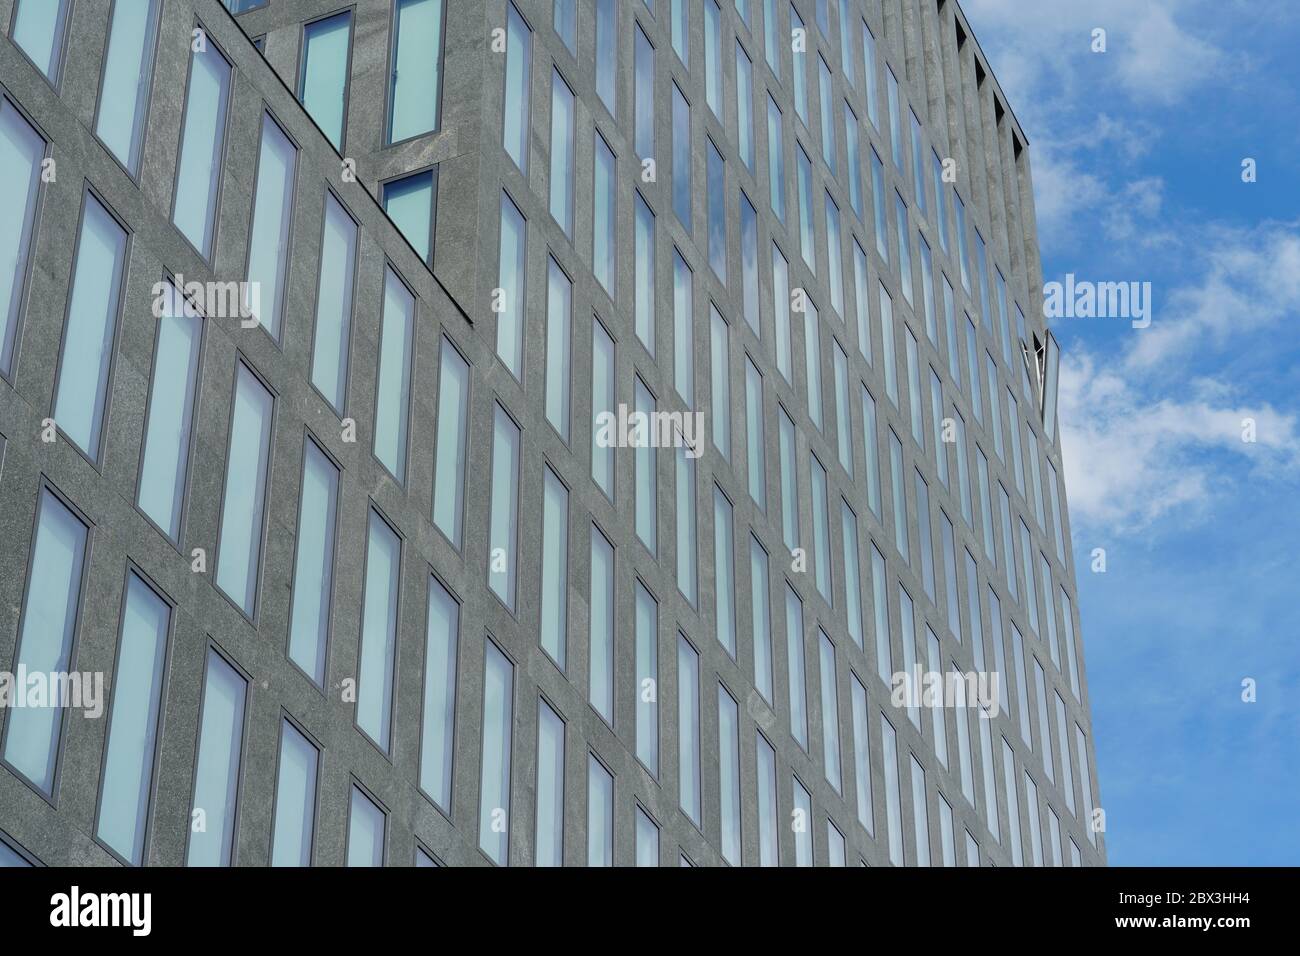 Ein einziges offenes Fenster, das aus einer einheitlichen Fassade eines Unternehmensgebäudes hervorwölbt. Ein Symbol für einzigartige, außergewöhnliche, außergewöhnliche Situation oder Ereignis. Stockfoto